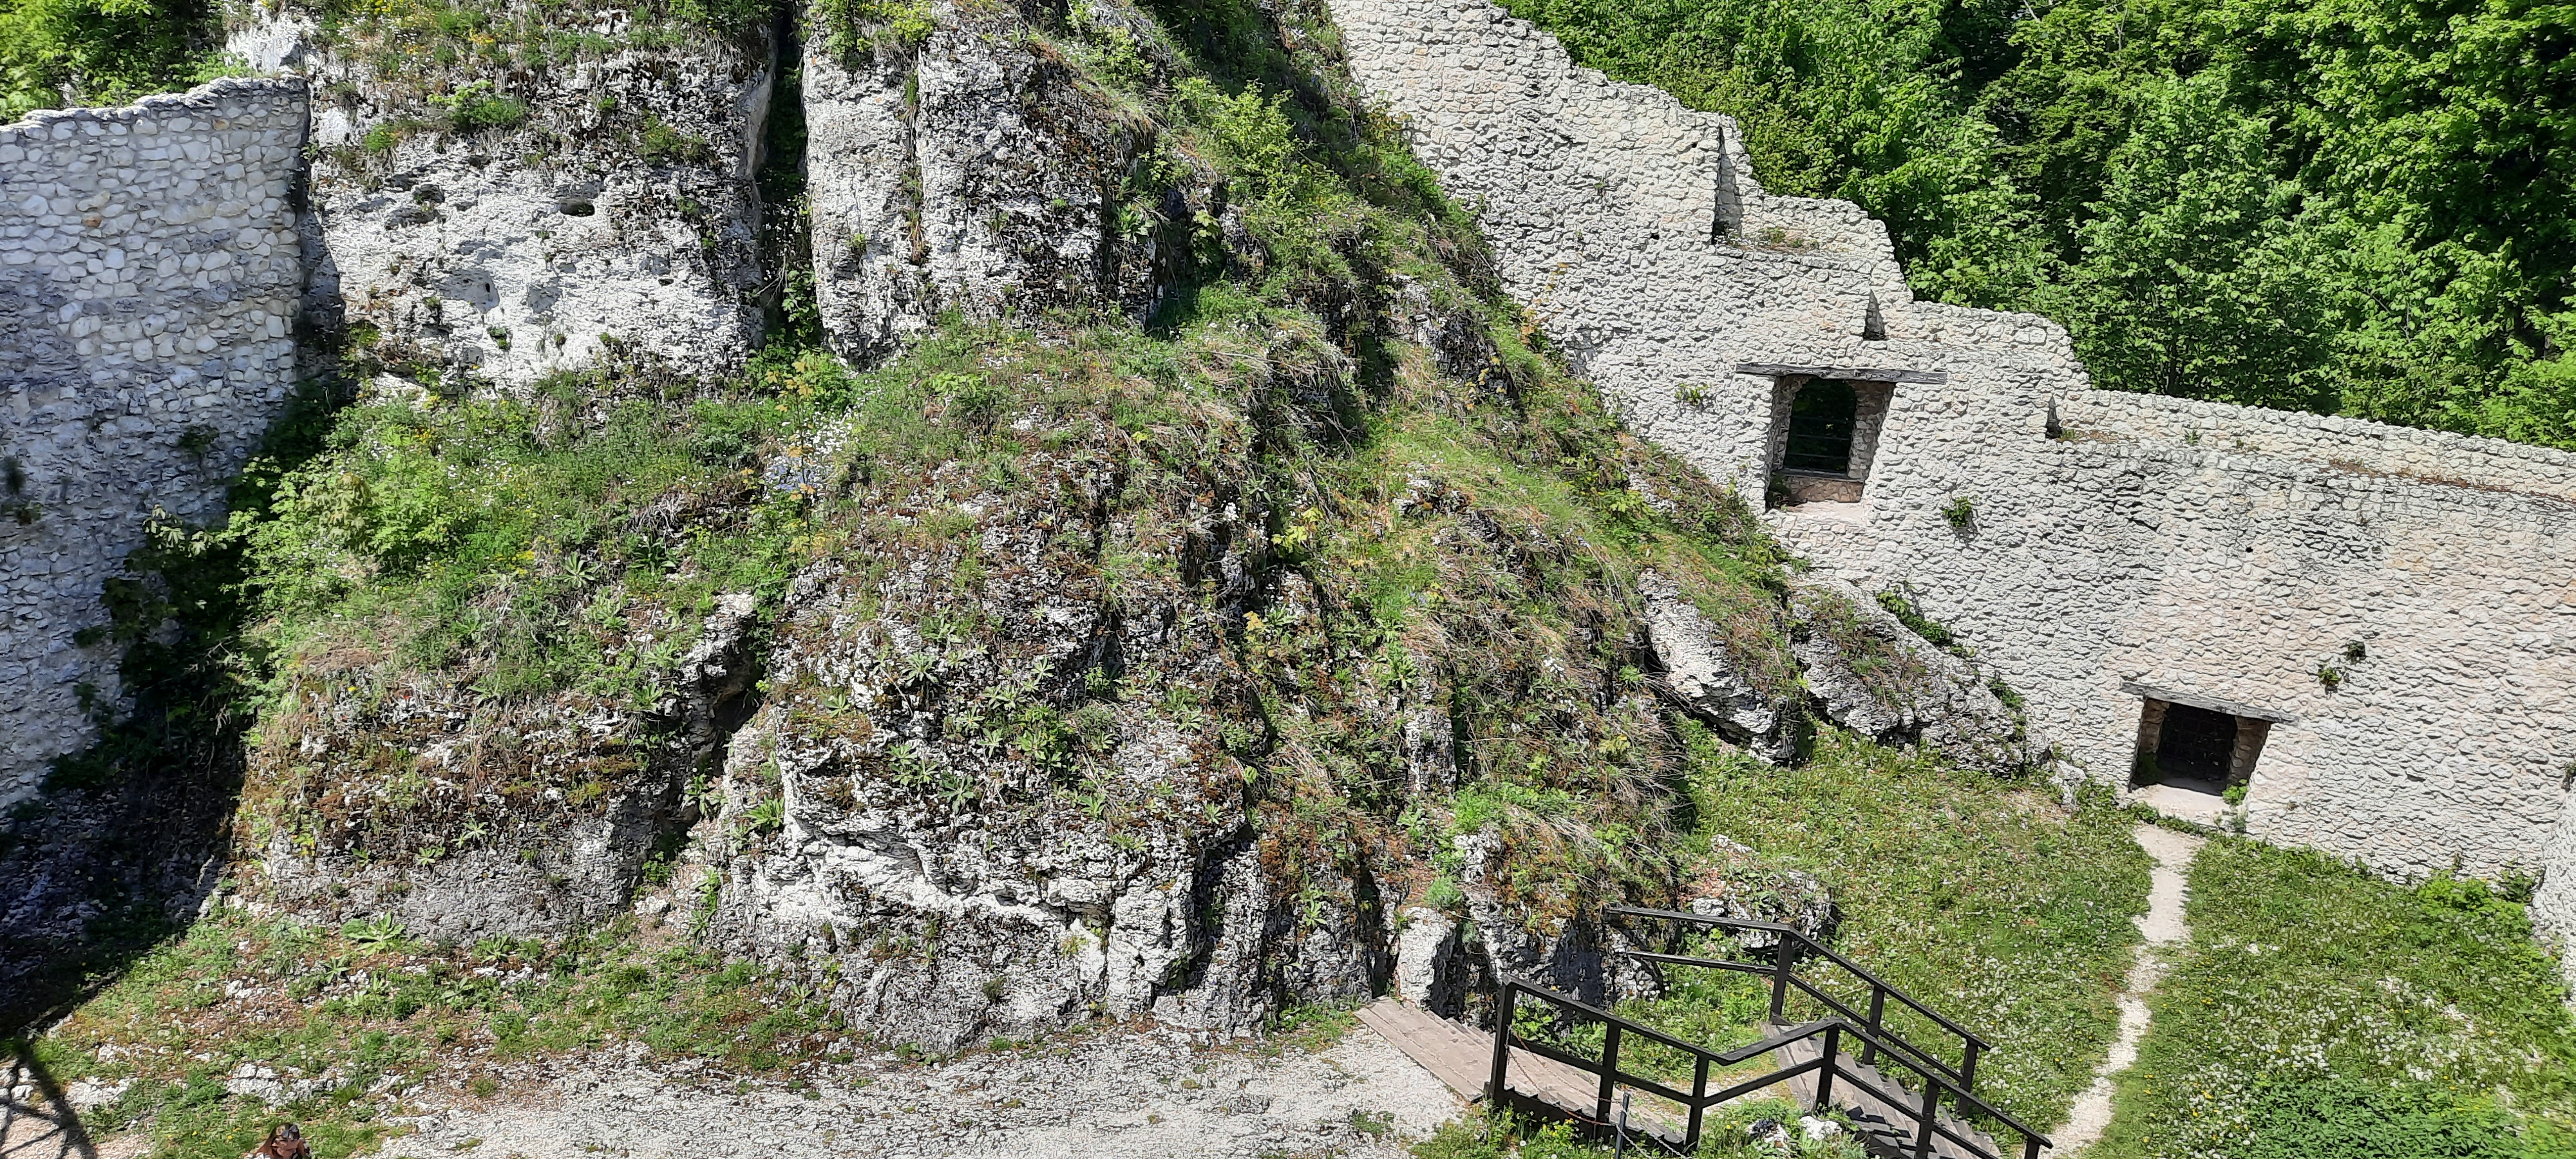 Zamek Pilcza i rezerwat przyrody Smoleń – atrakcje Jury Krakowsko-Częstochowskiej